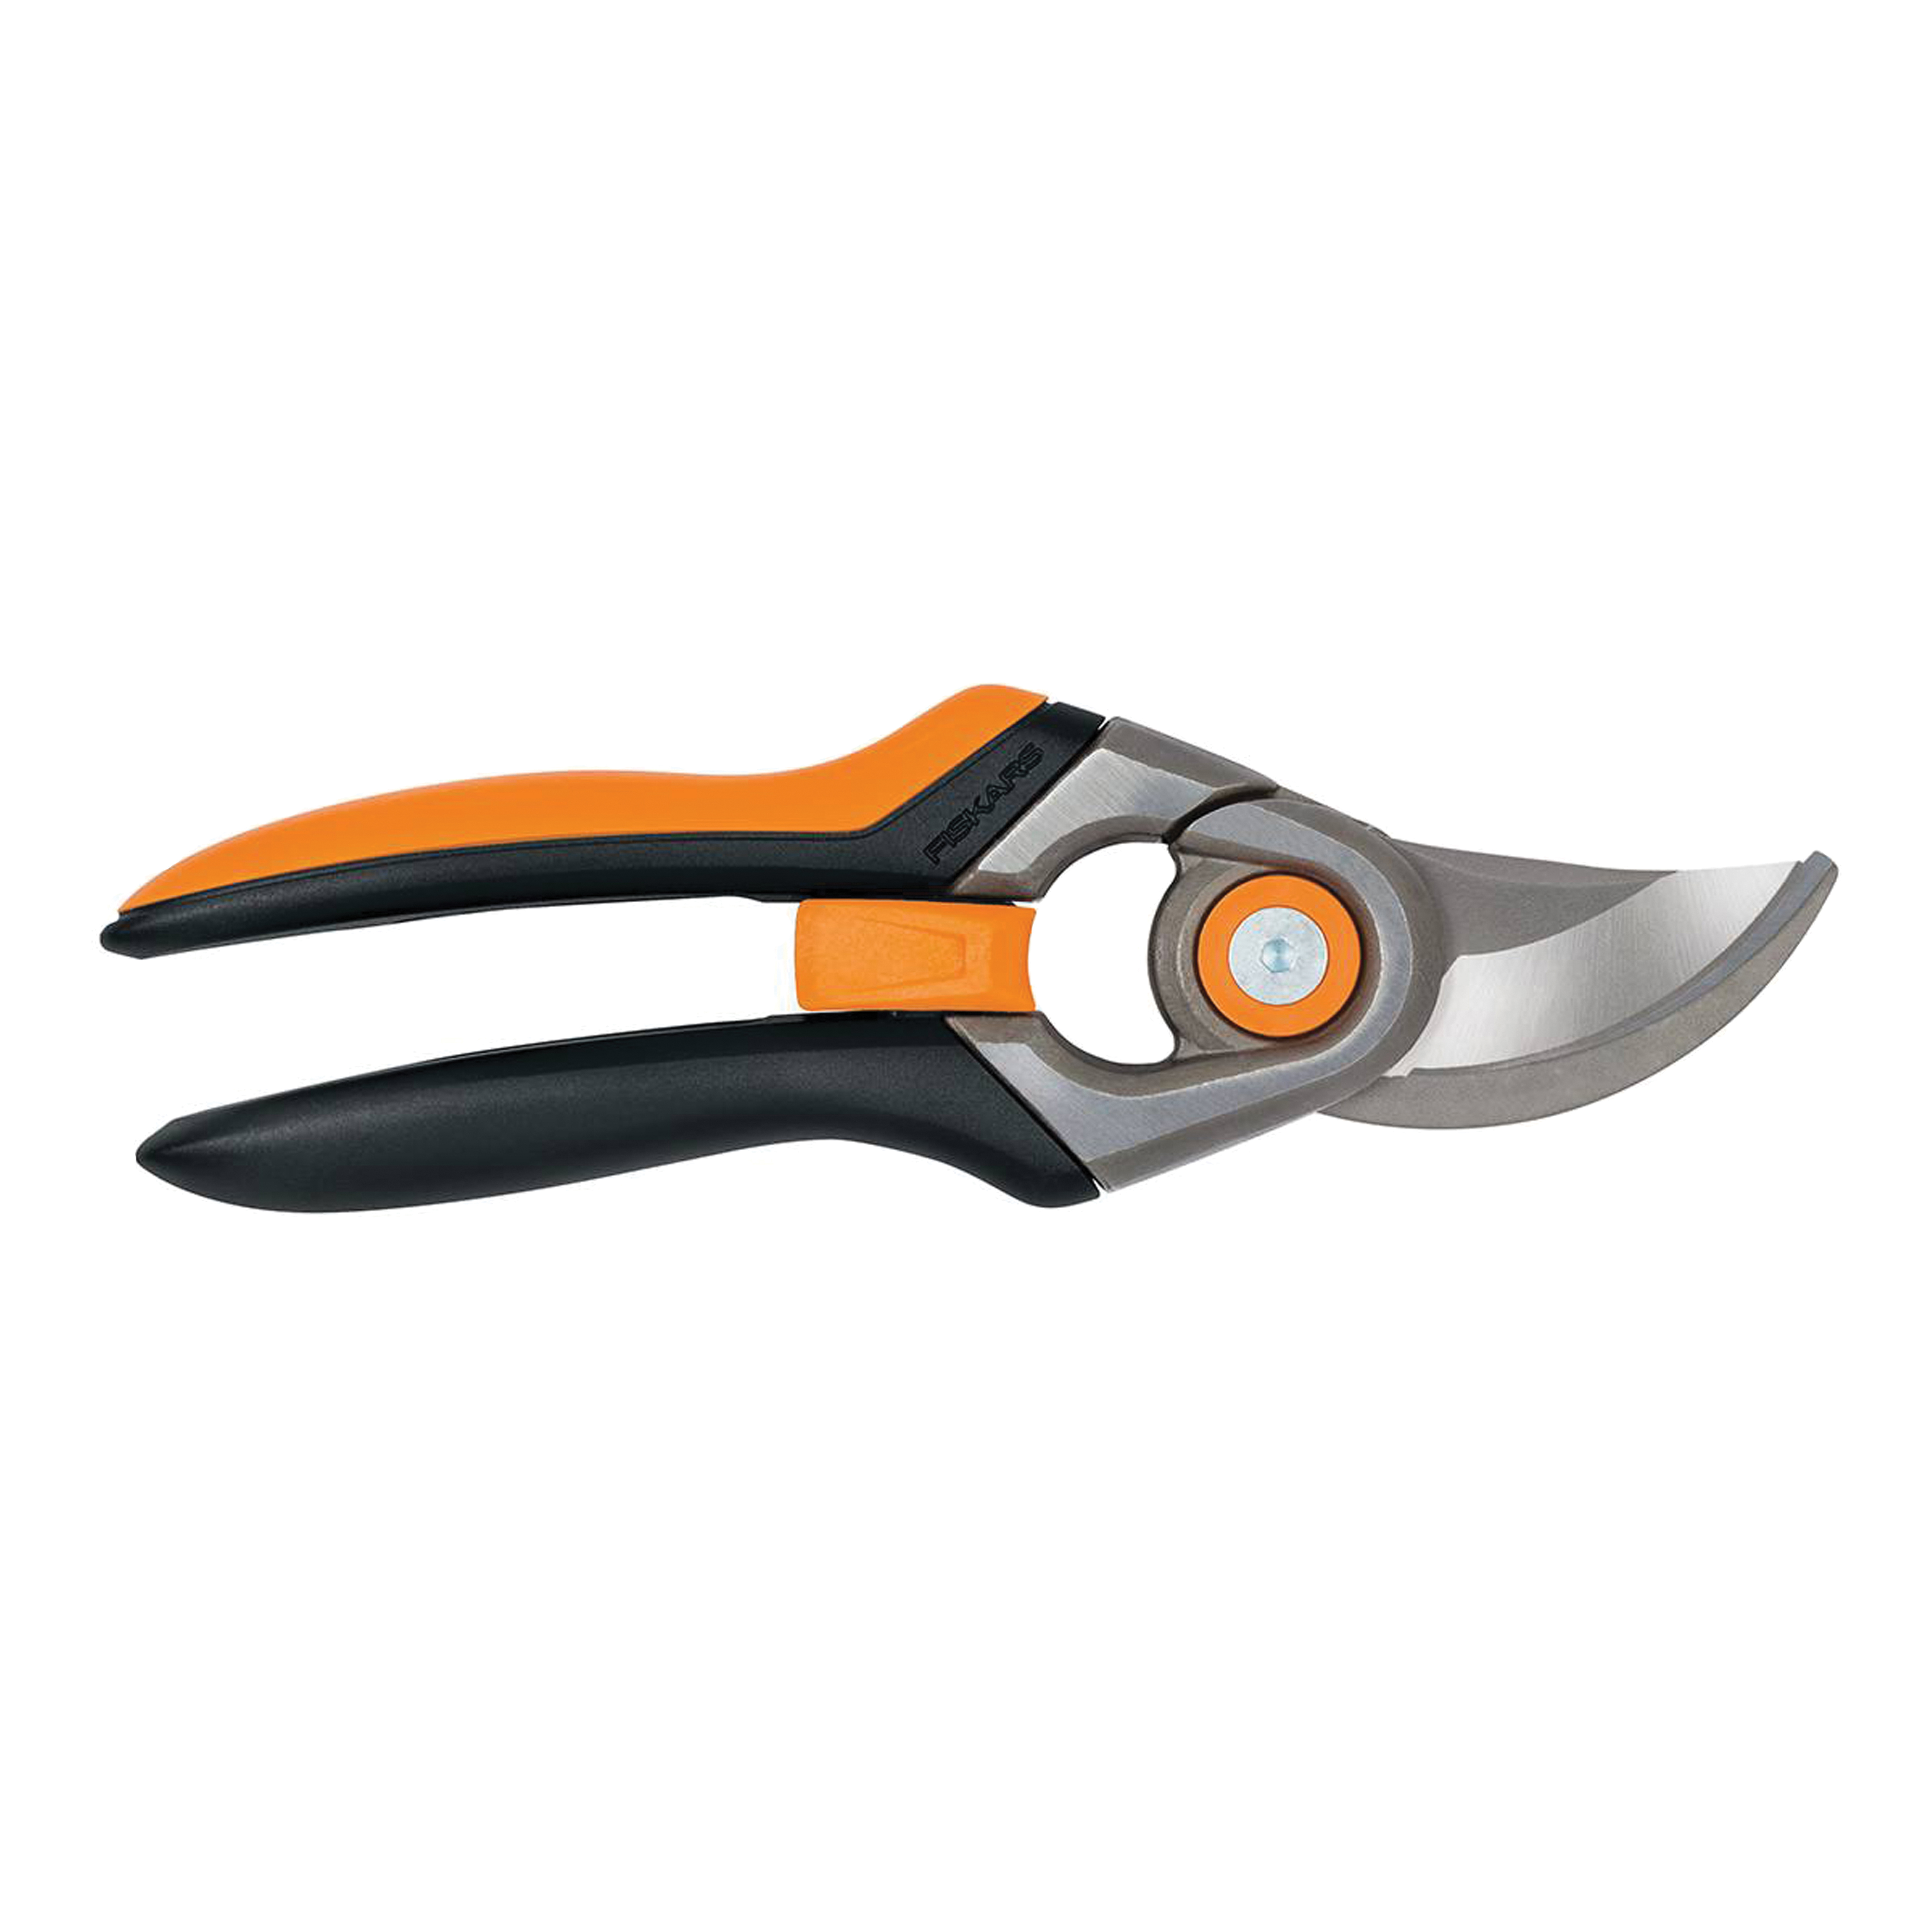 392781-1001 Pruner, Steel Blade, Bypass Blade, Steel Handle, Soft-Grip Handle